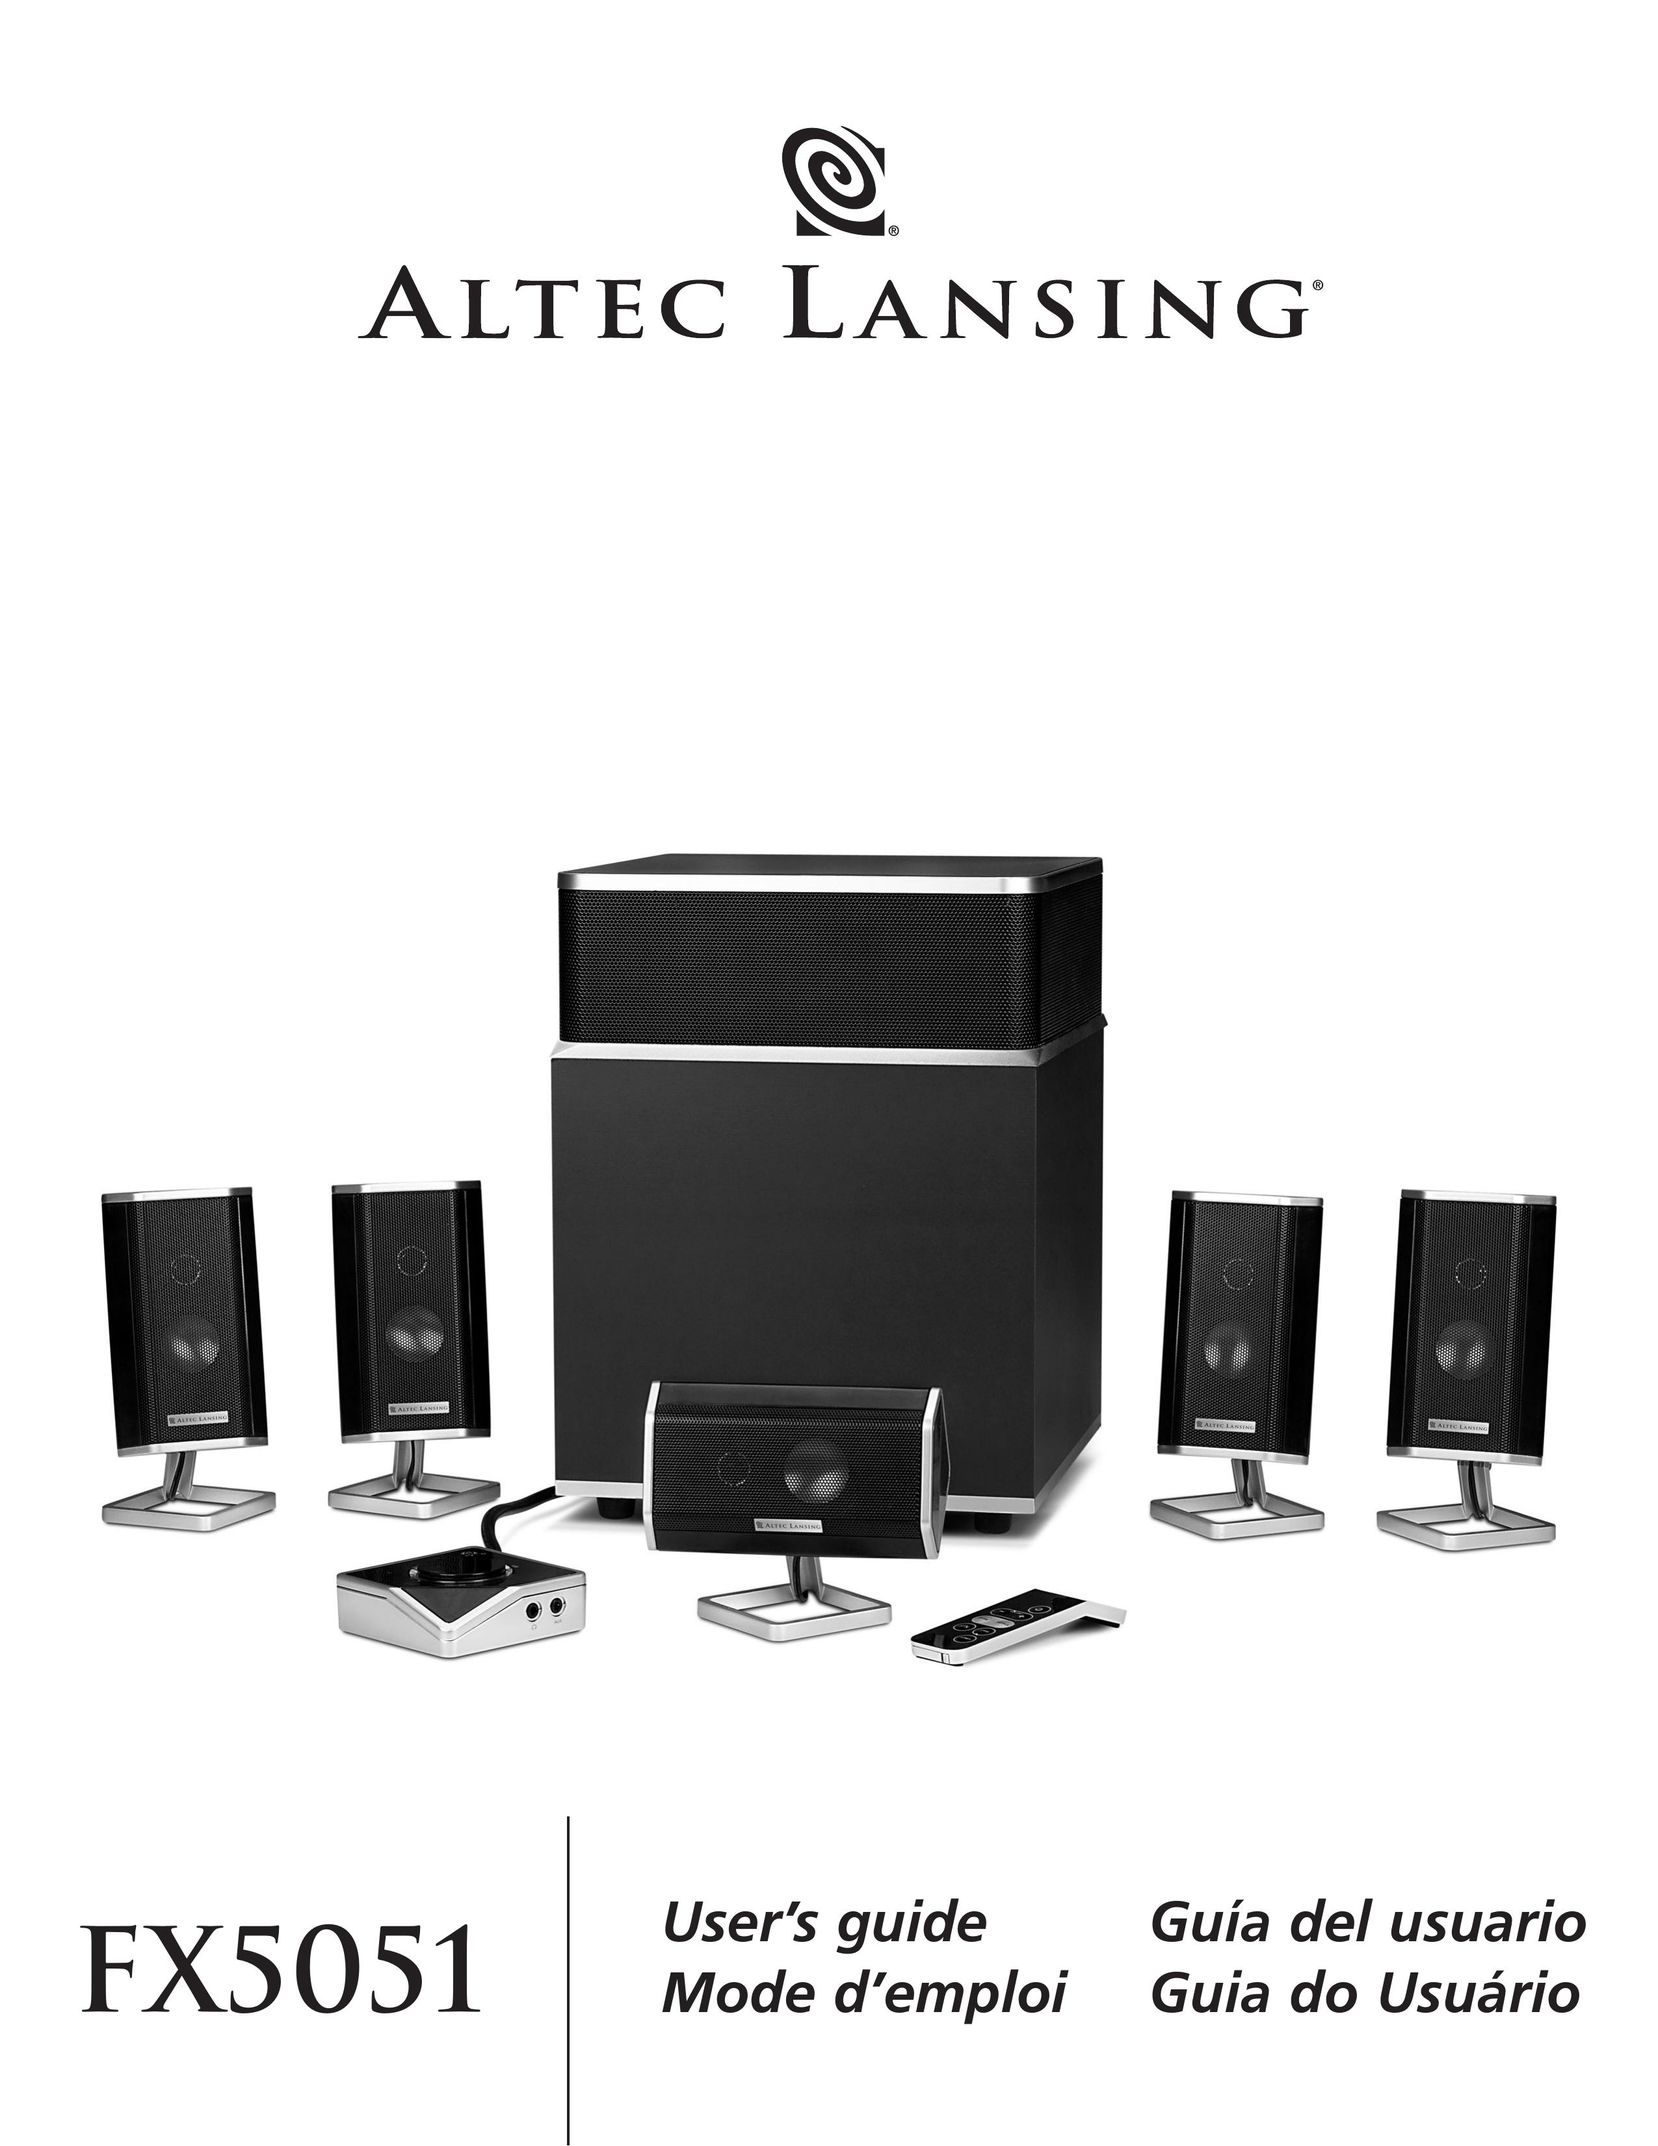 Altec Lansing FX5051 Stereo System User Manual